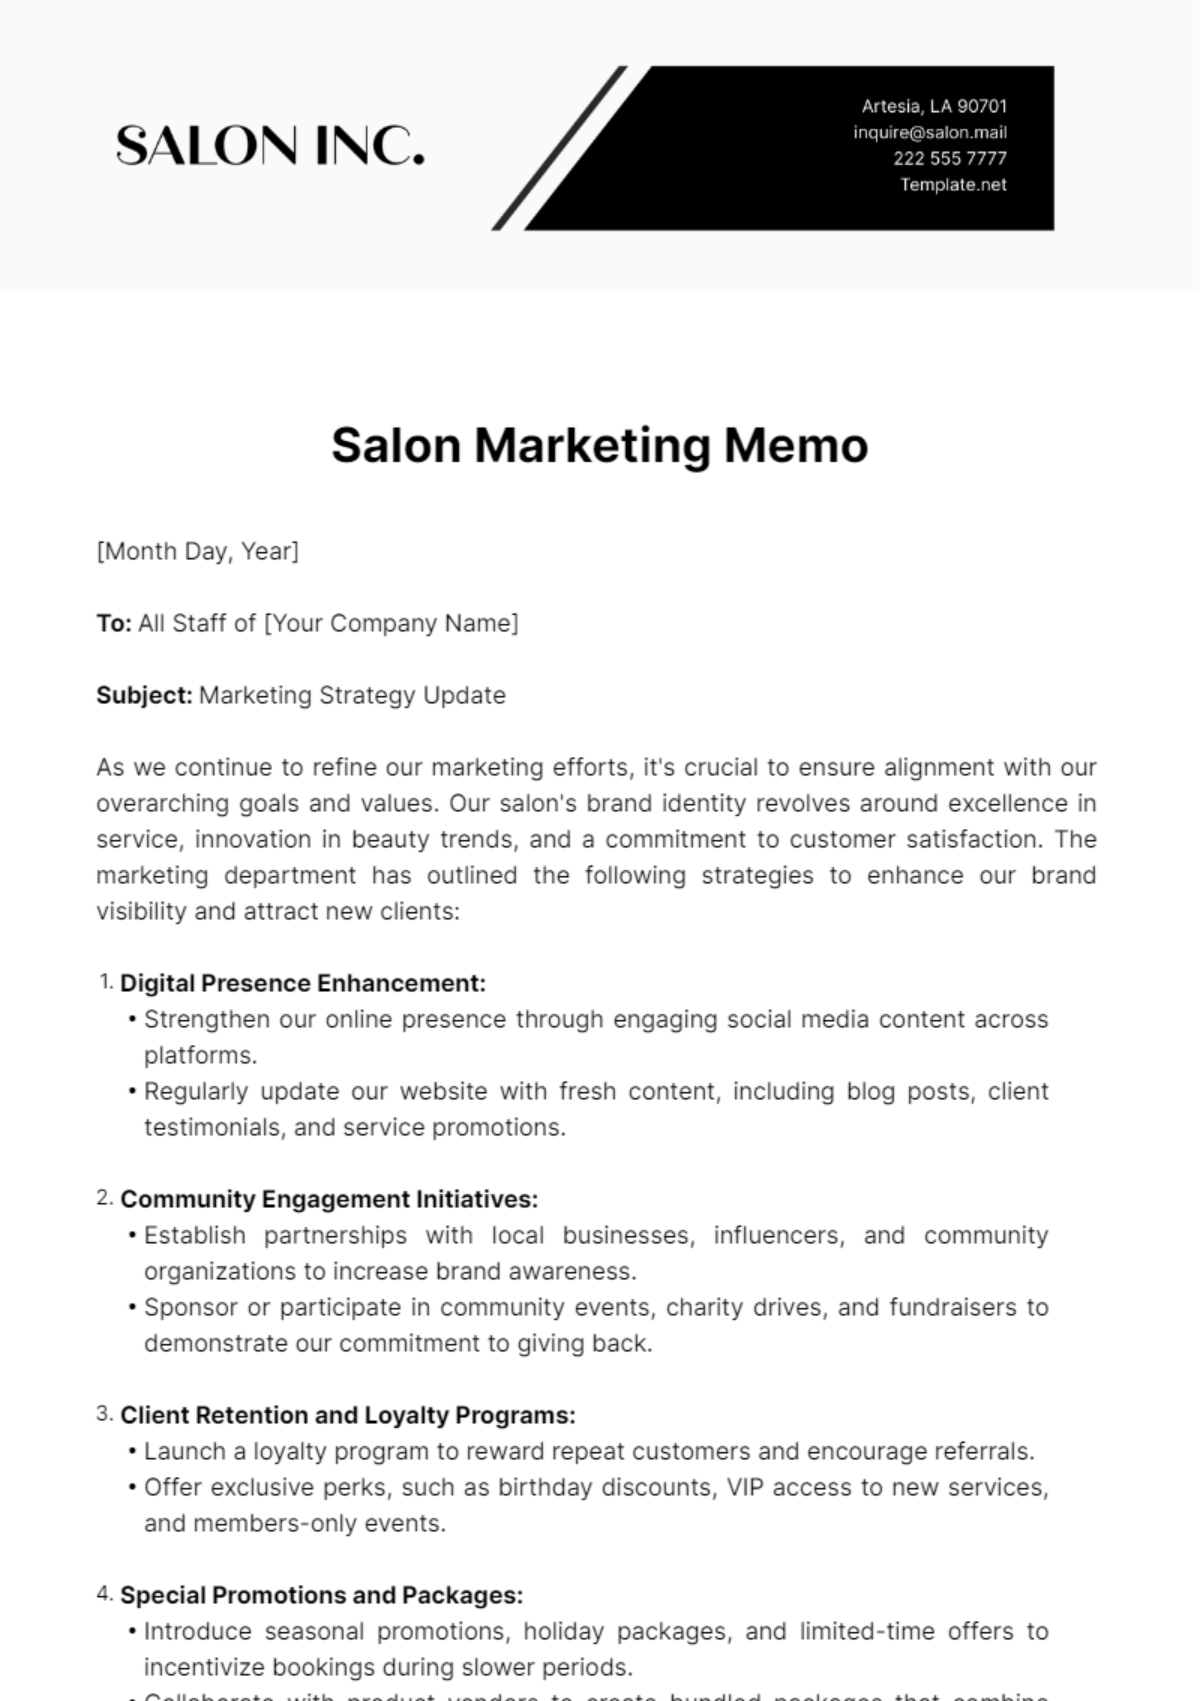 Salon Marketing Memo Template